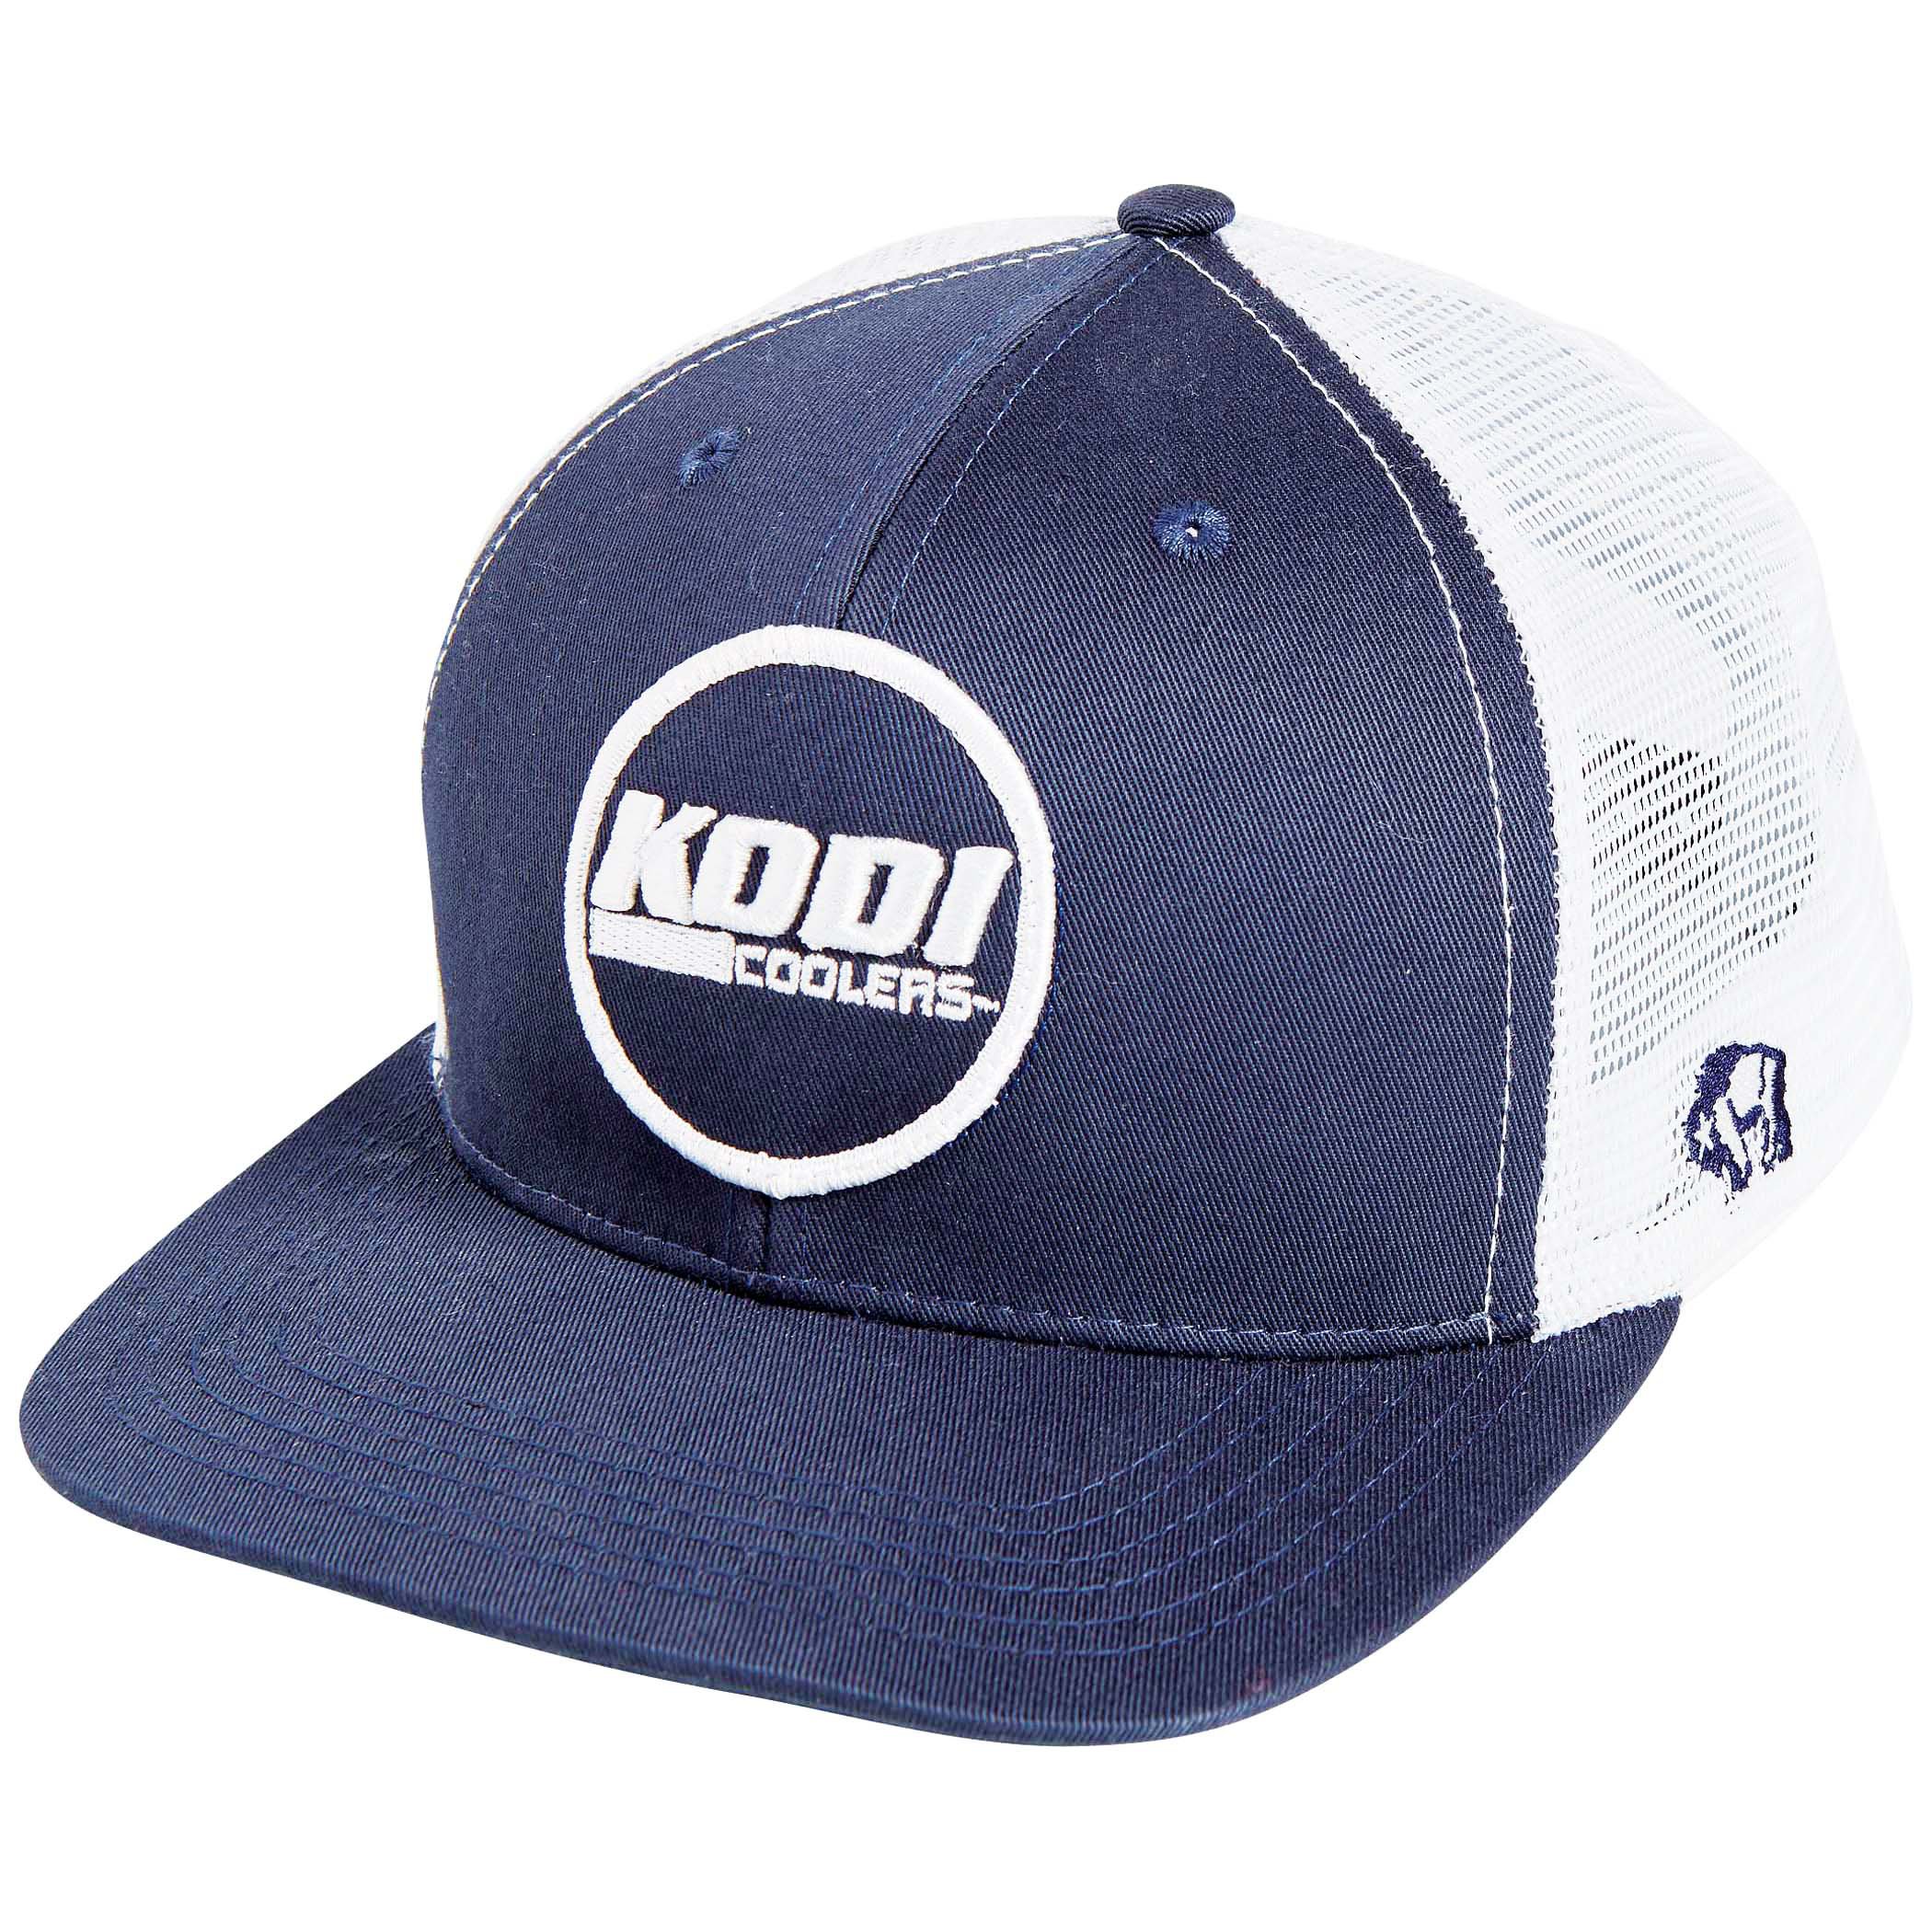 KODI Navy Circle Hat - Shop Hats at H-E-B